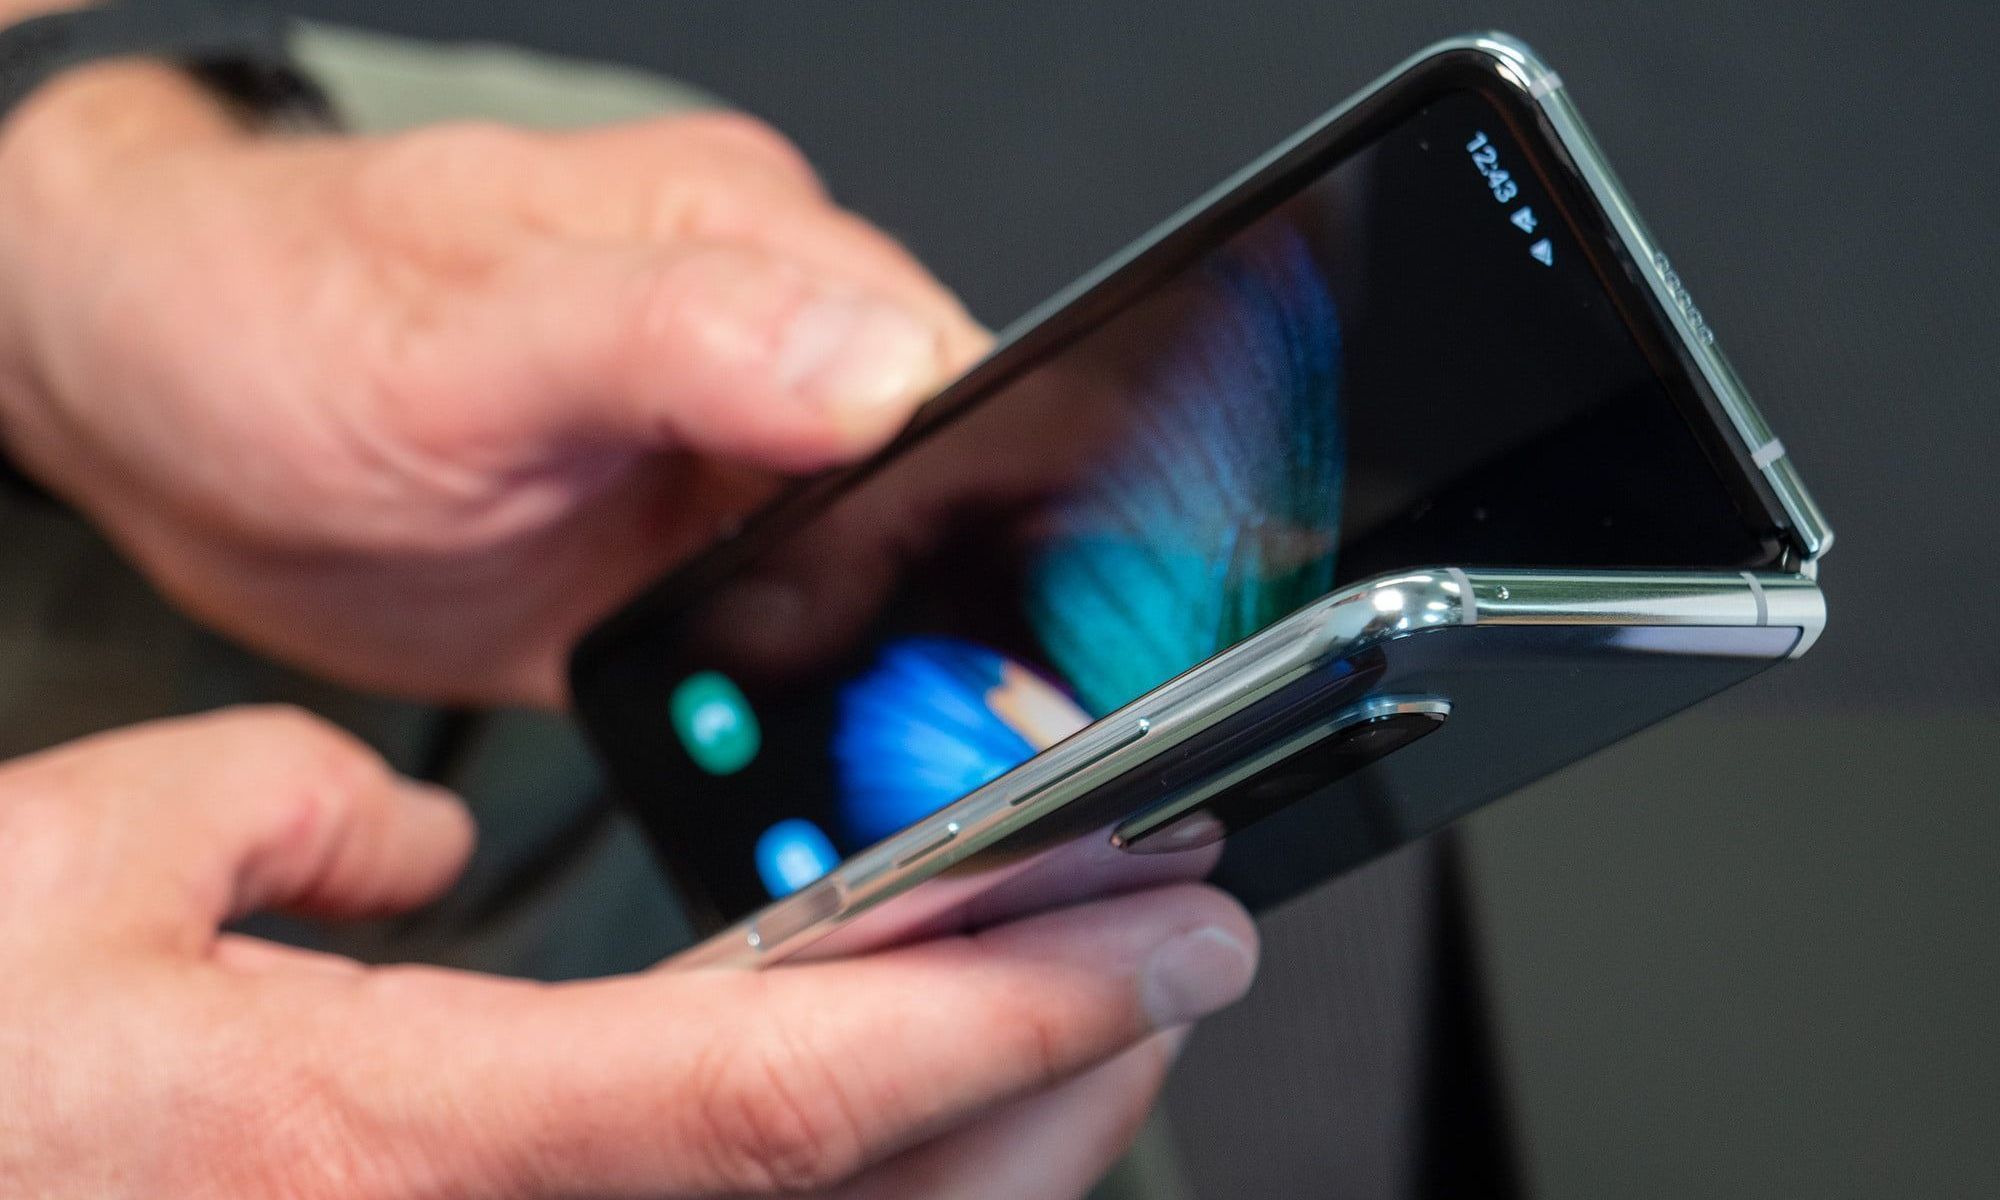 三星将于2021年推出3款折叠手机:售价六千元